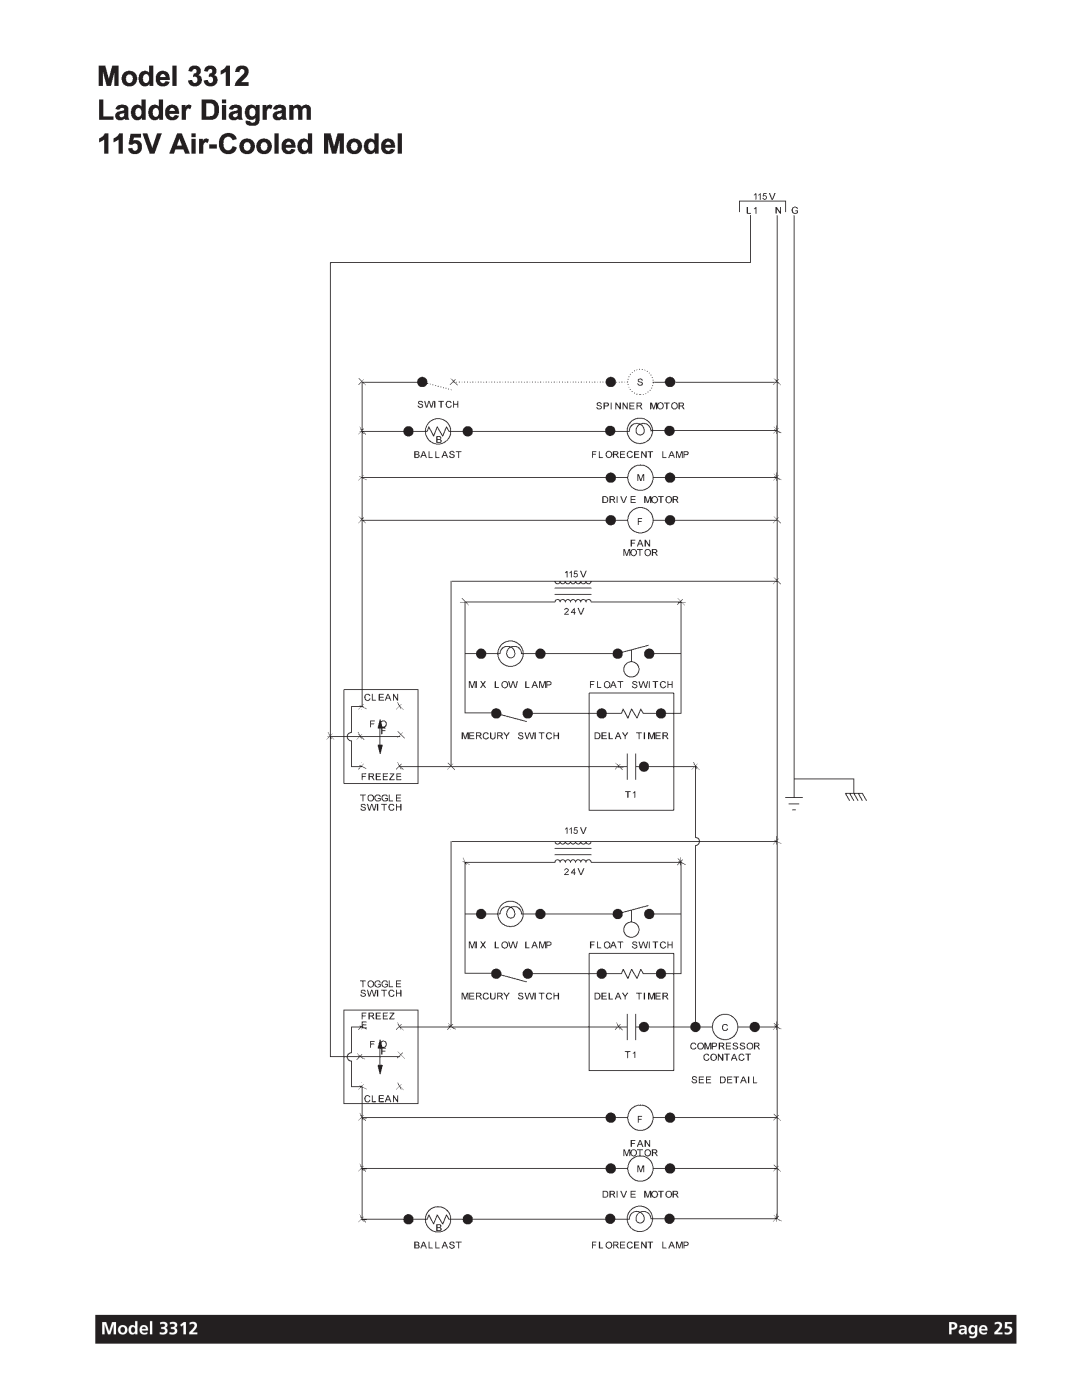 Grindmaster 3311 manual Model Ladder Diagram 115V Air-CooledModel, Page 